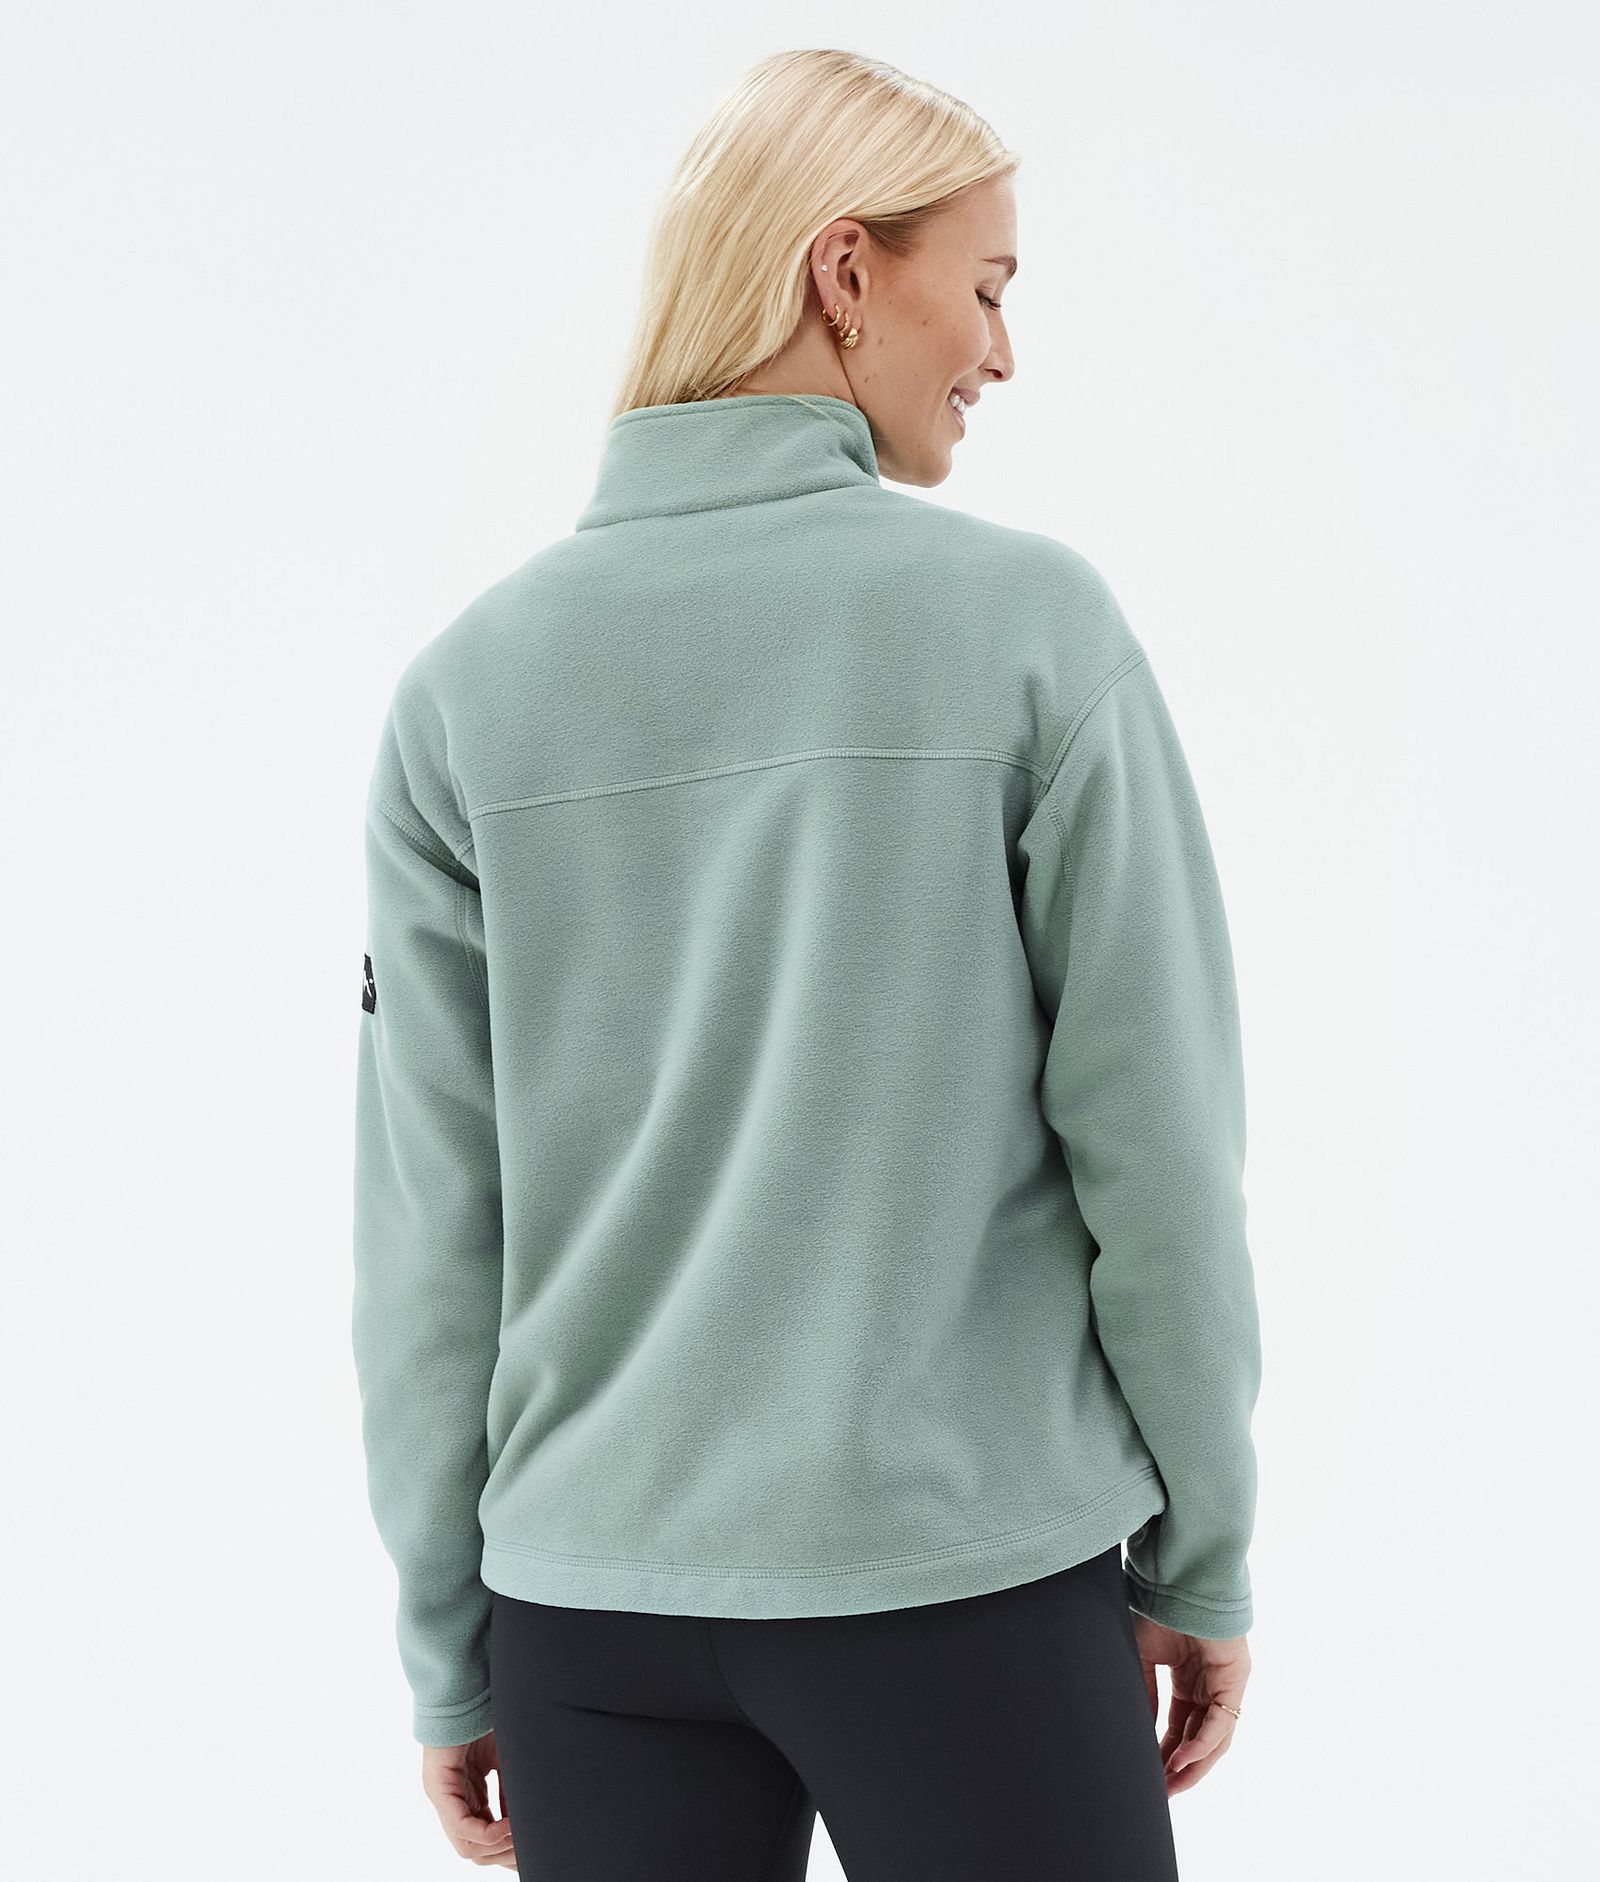 Dope Comfy W Fleece Sweater Women Faded Green Renewed